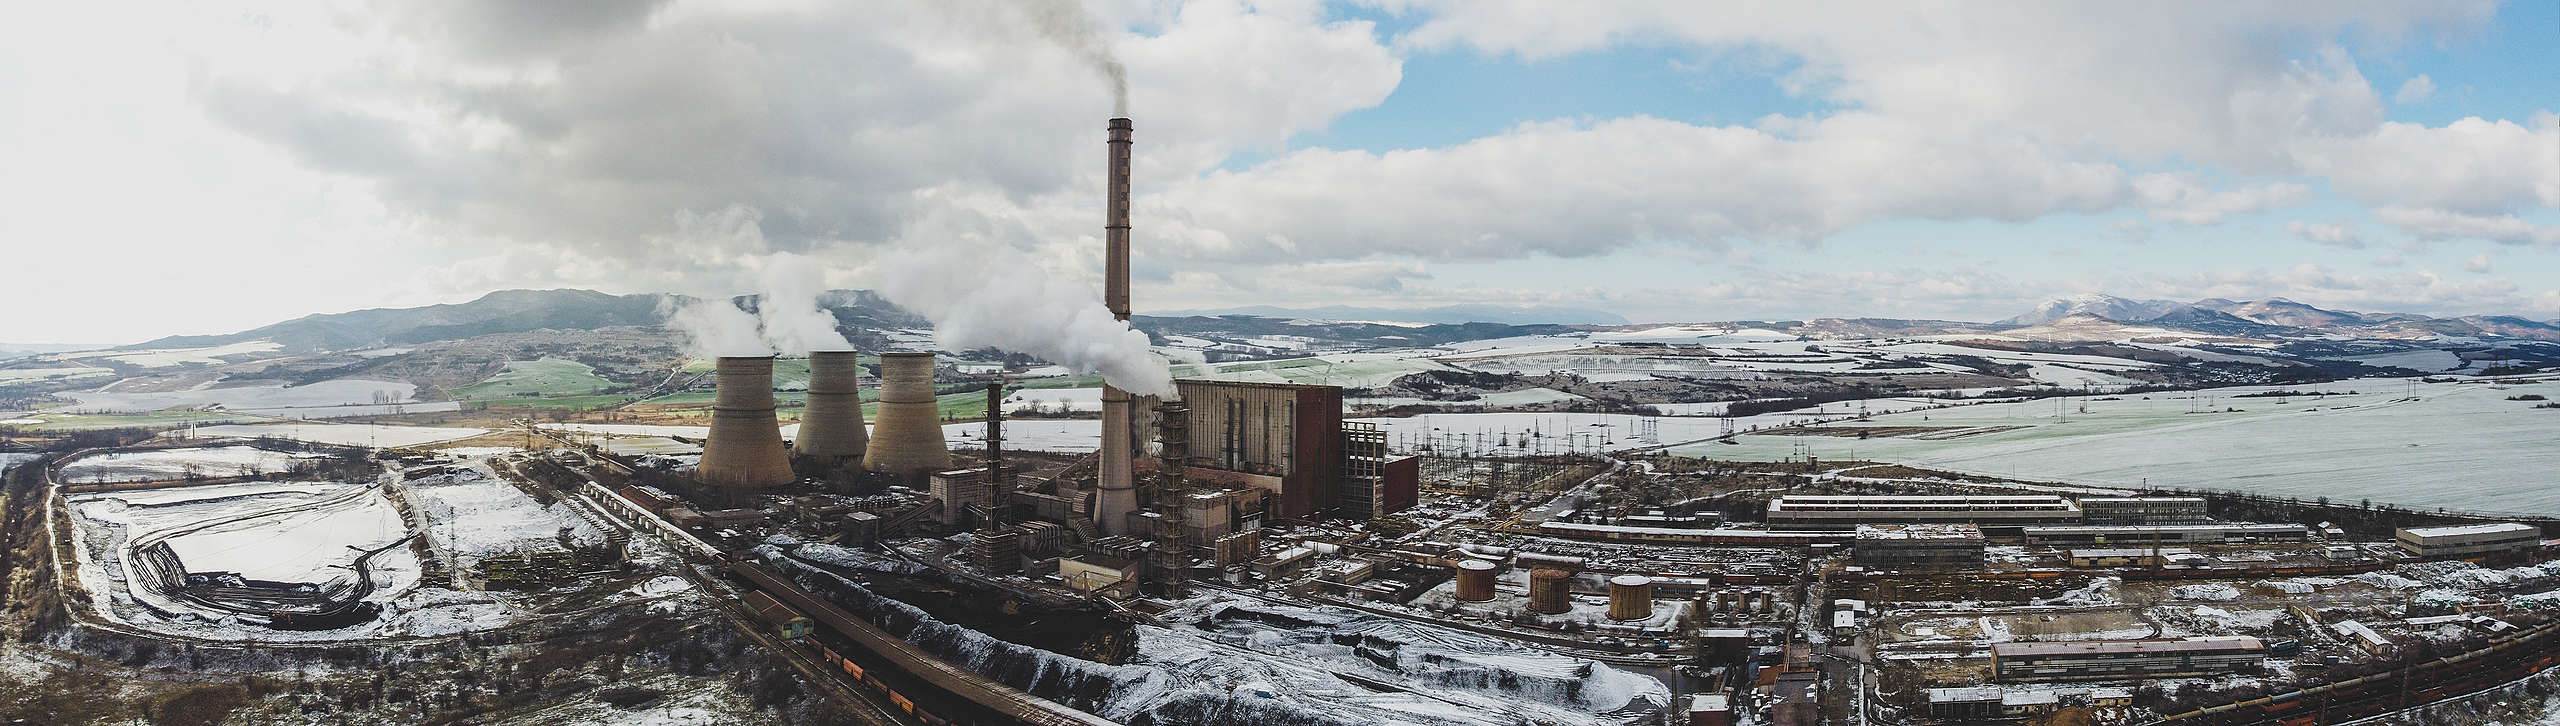 ТЕЦ „Бобов дол“ изпуска непречистени емисии по време на разпалване на инсталацията, въздушна снимка на комплекса, Големо село, януари 2021 г.